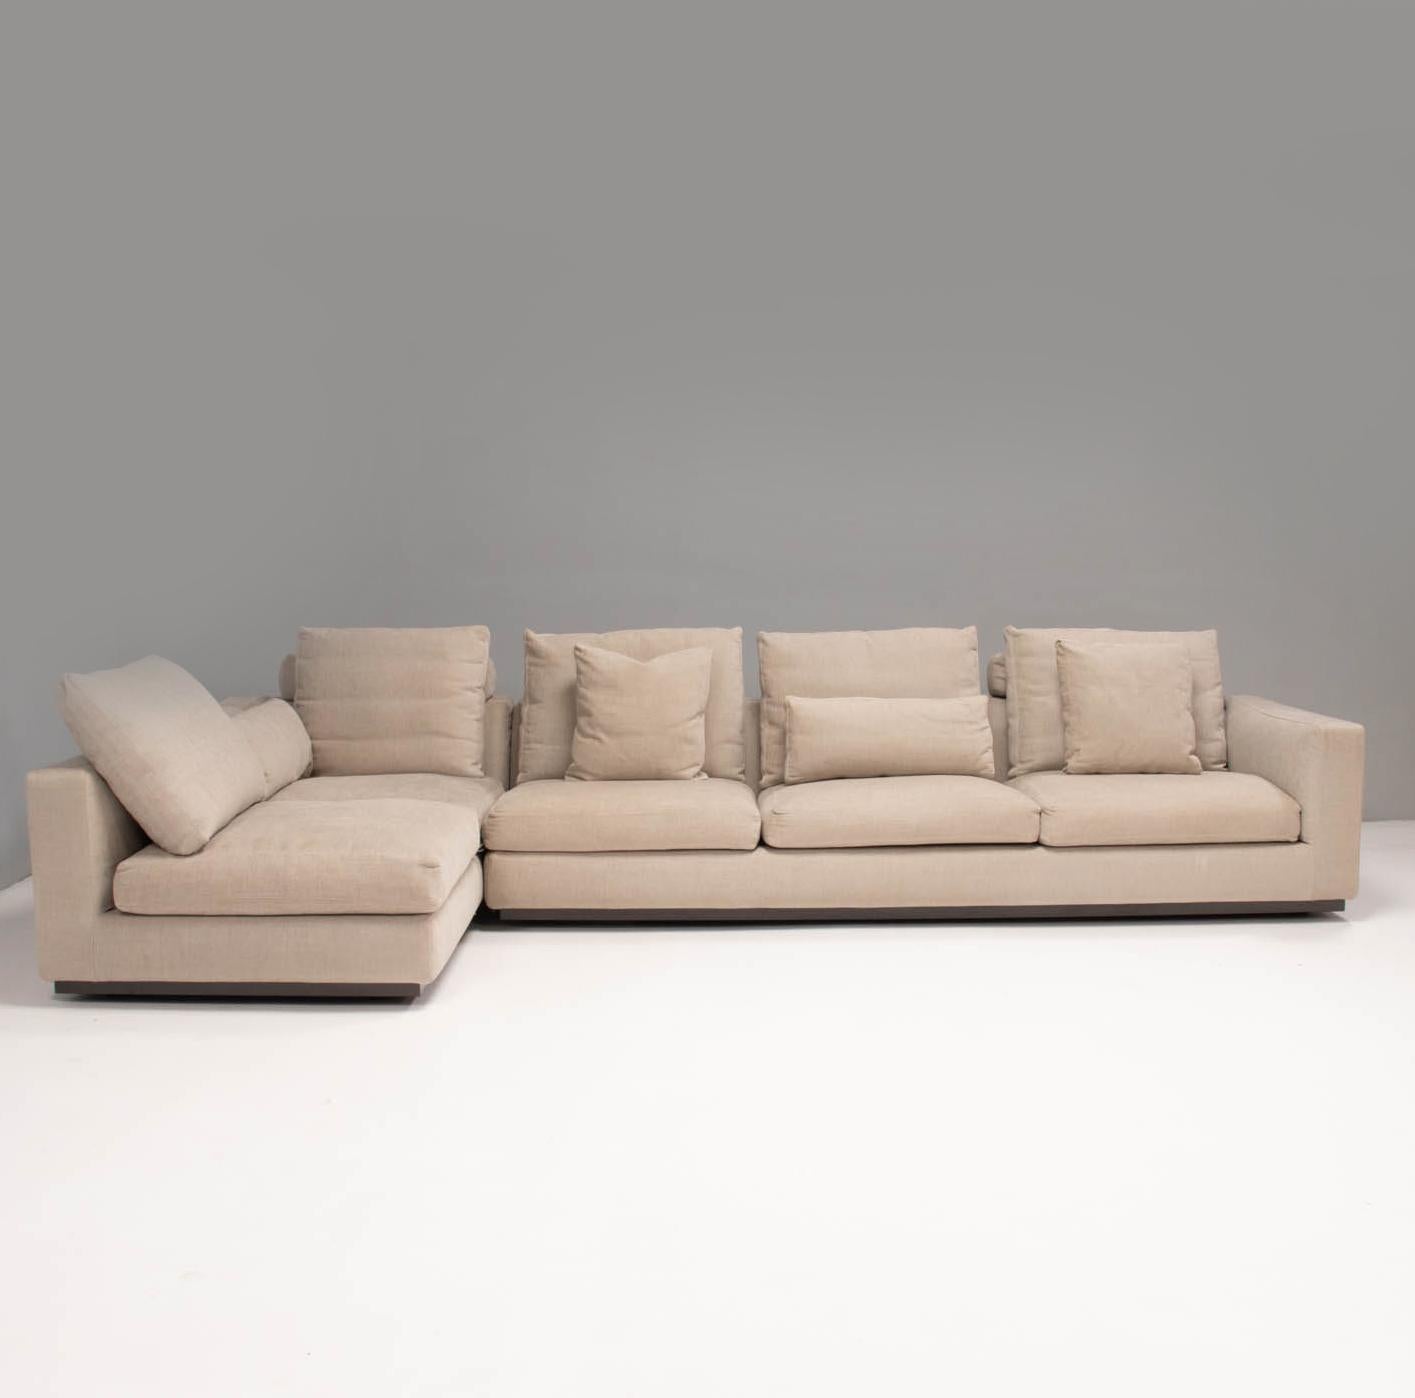 minotti sofa price